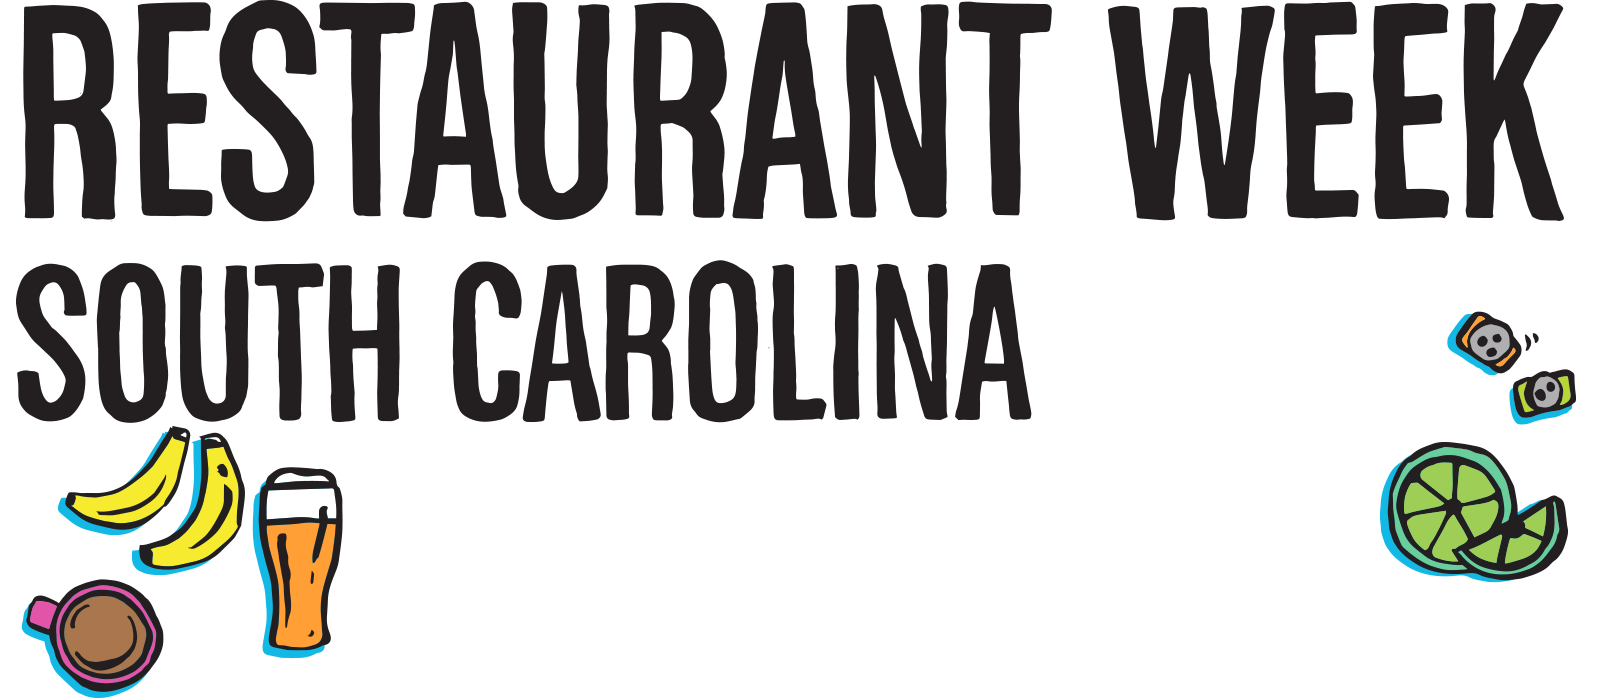 Restaurant Week Charleston 